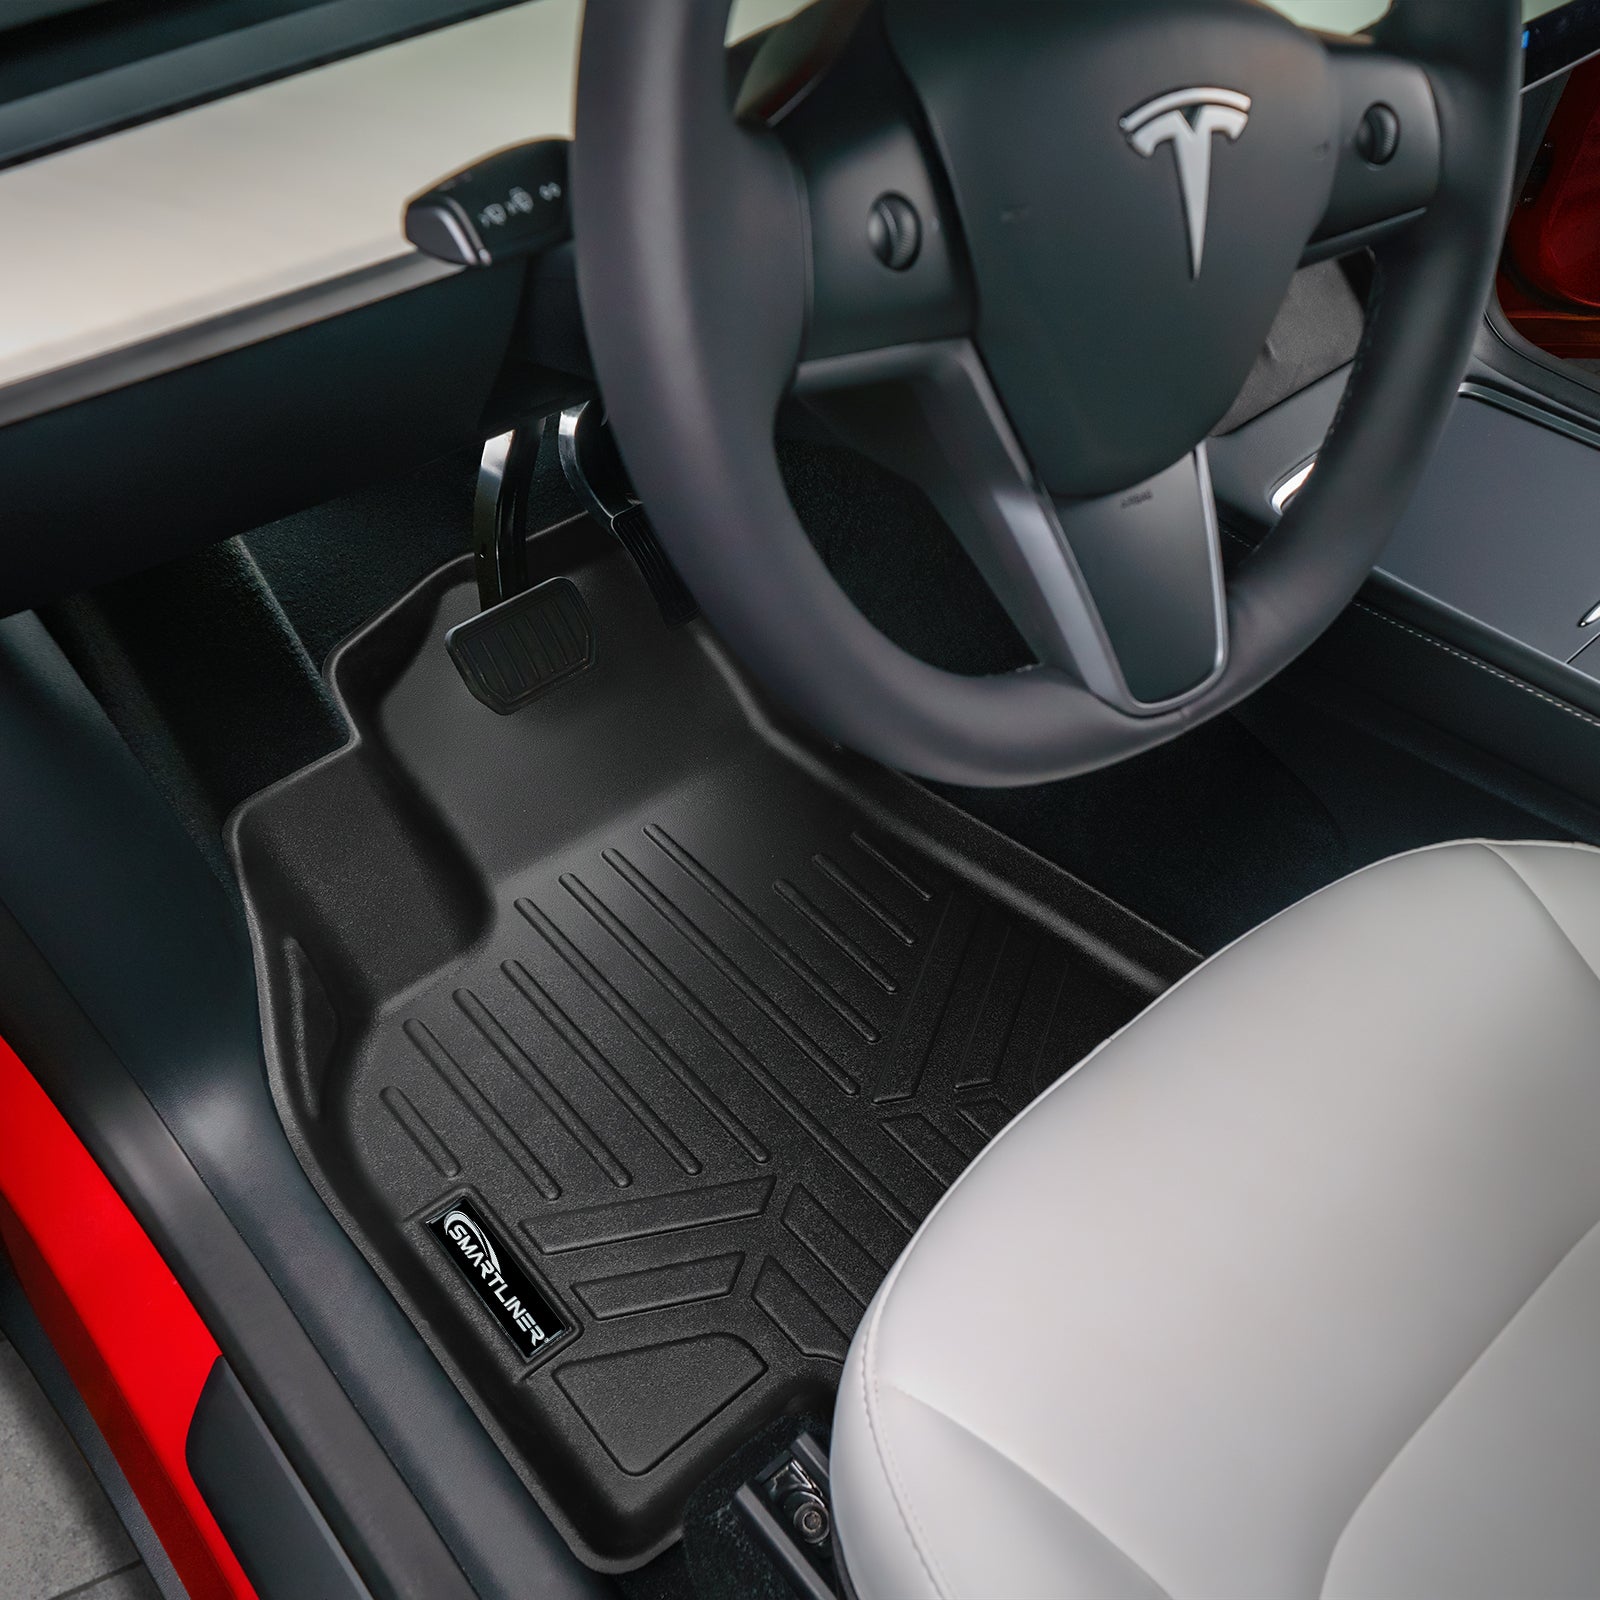 SMARTLINER Custom Fit Floor Liners For for 2020-2023 Tesla Model Y (5 Passenger)